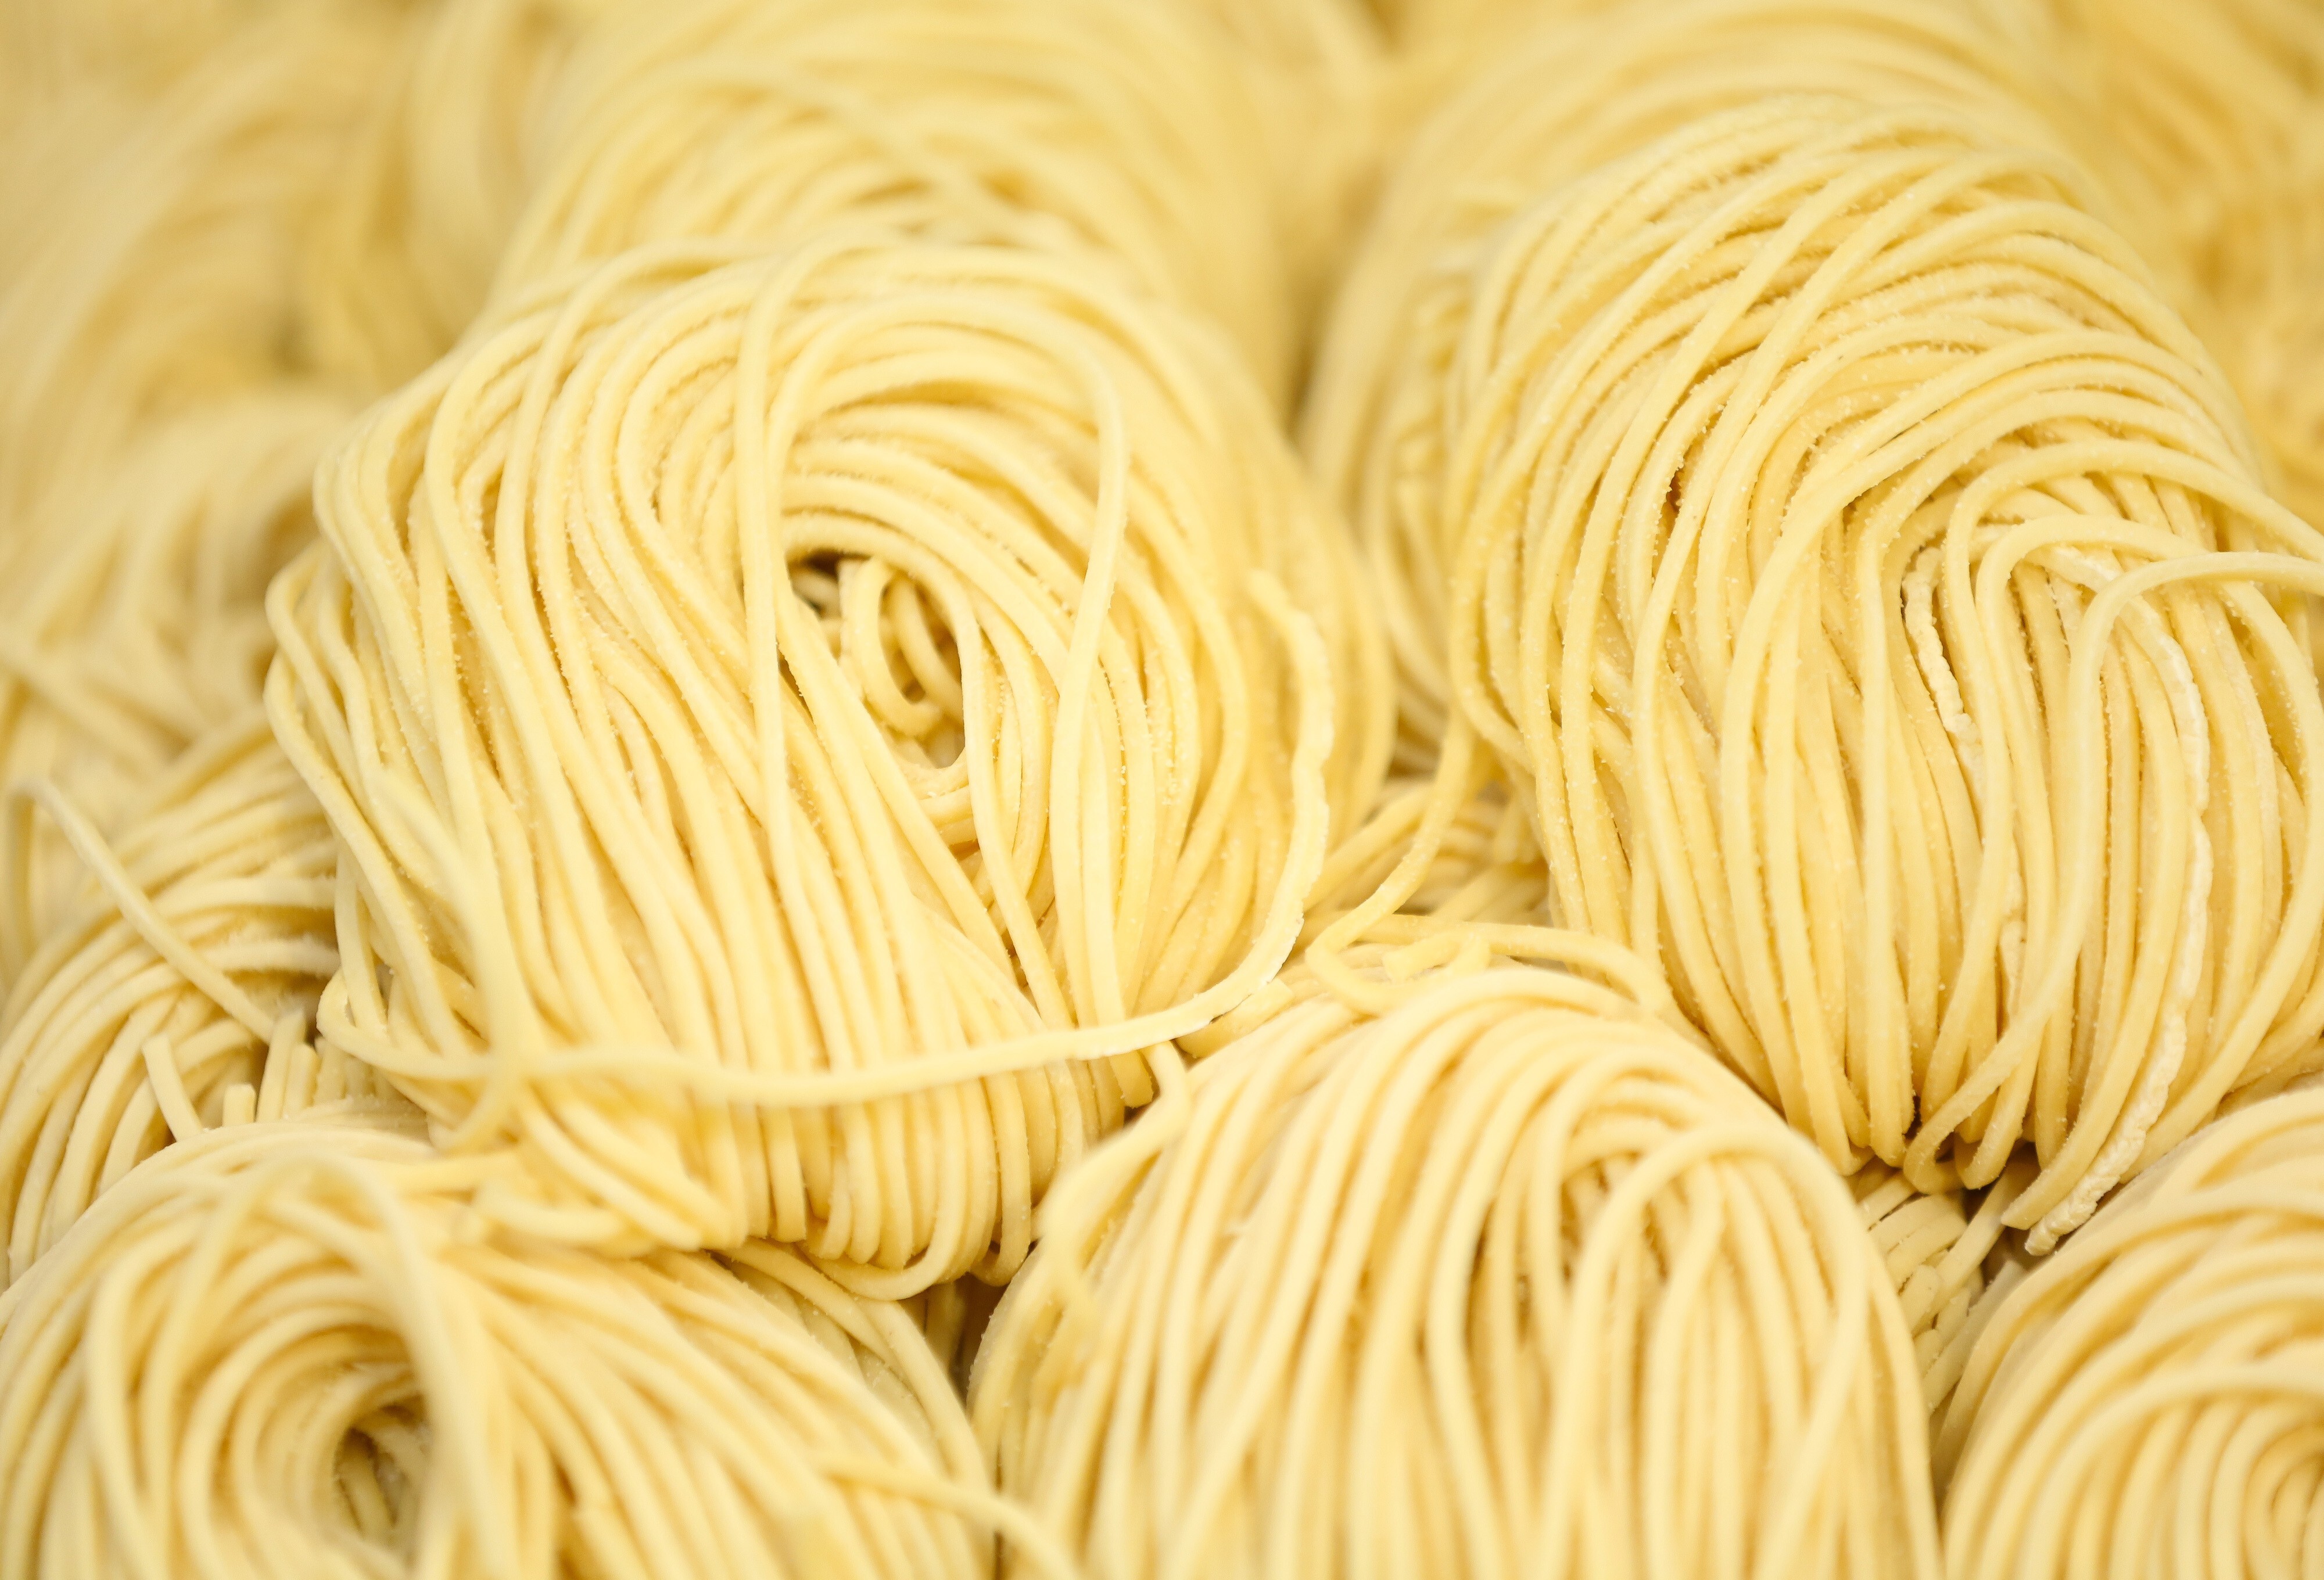 Bundles of fresh handmade pasta. Photo: Bloomberg